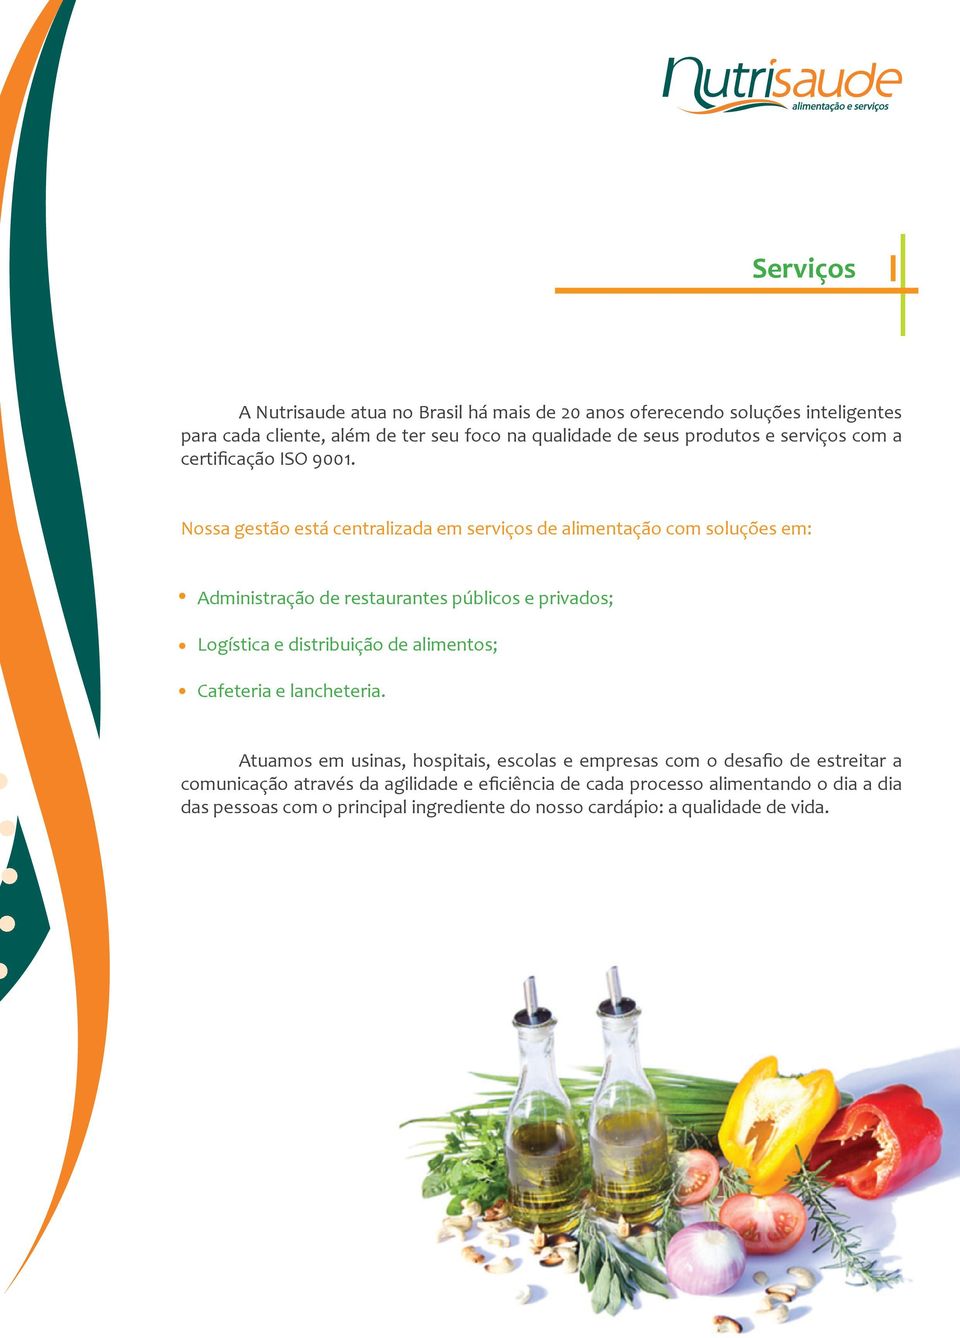 Nossa gestão está centralizada em serviços de alimentação com soluções em: Administração de restaurantes públicos e privados; Logística e distribuição de